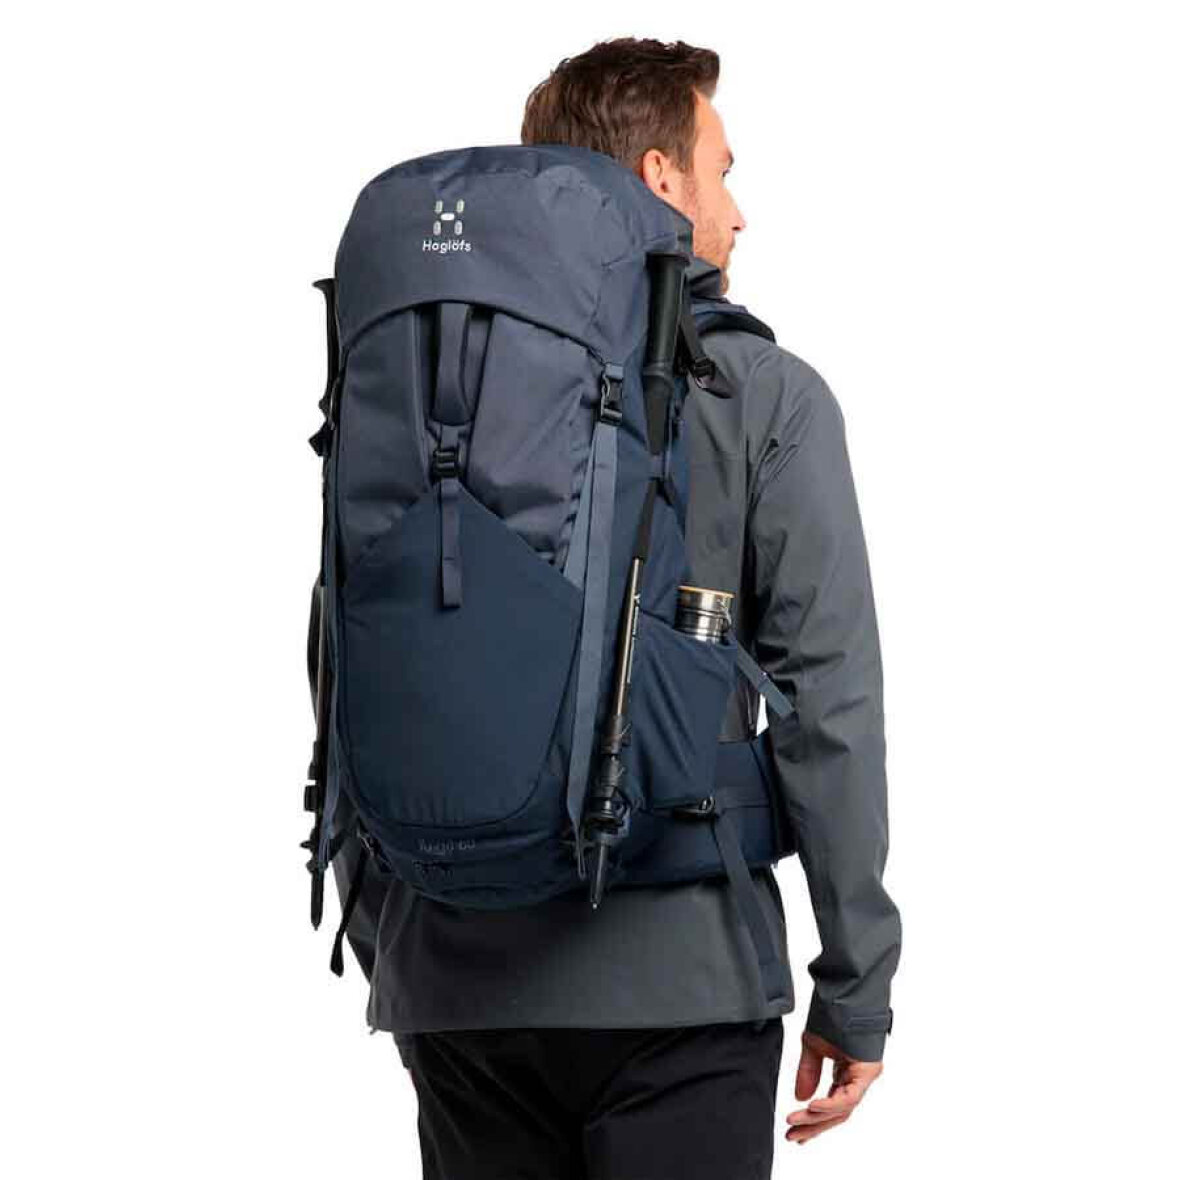 Haglöfs Äng 60 L backpack: Køb en flot god